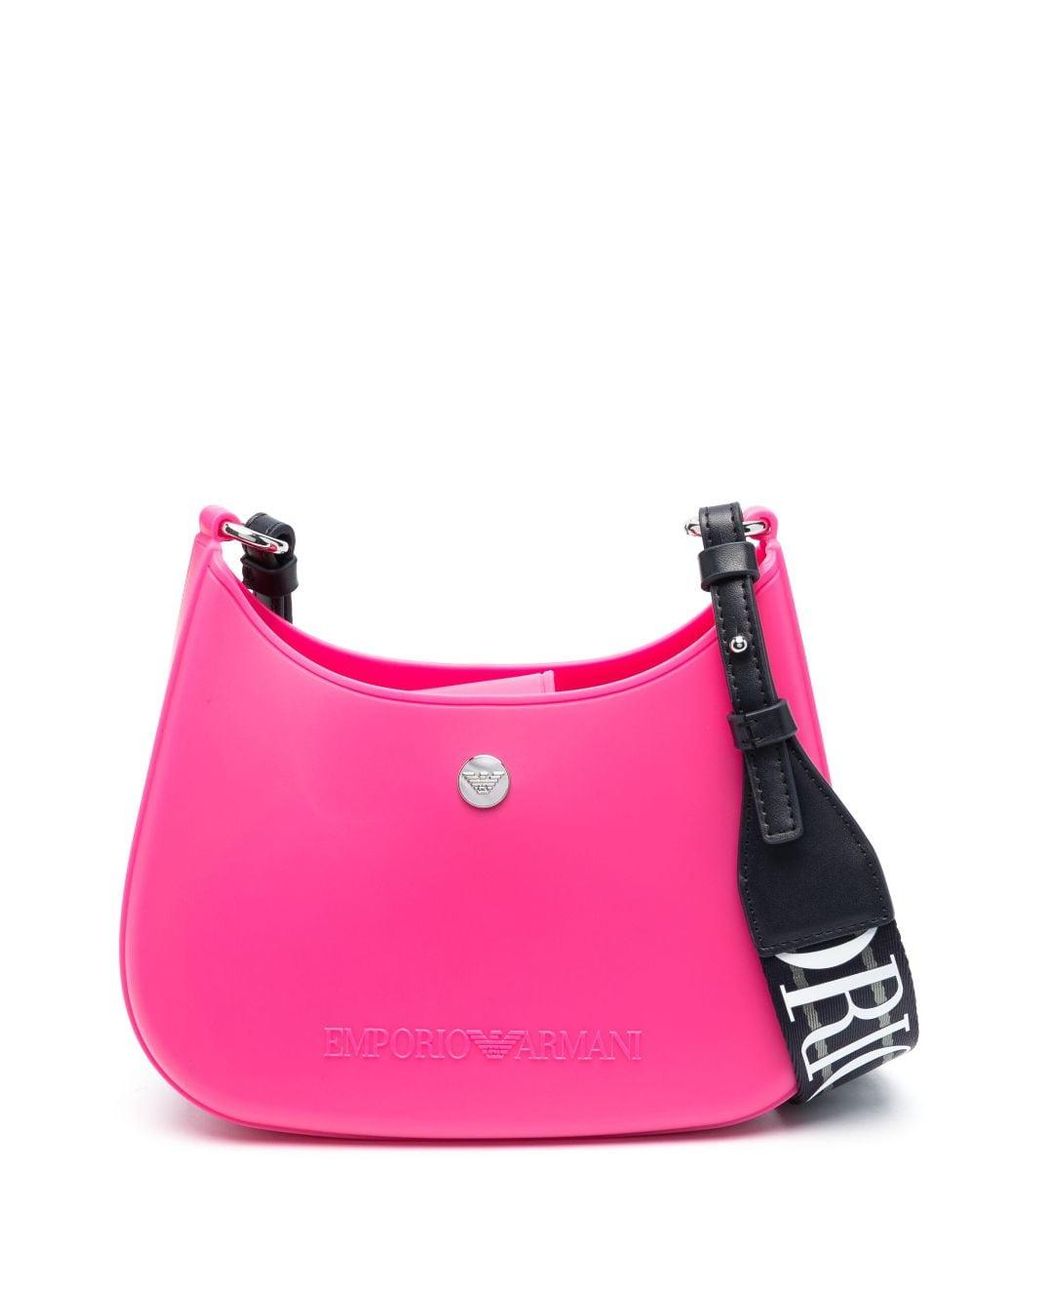 Emporio Armani Gummy Crossbody Bag in Pink | Lyst